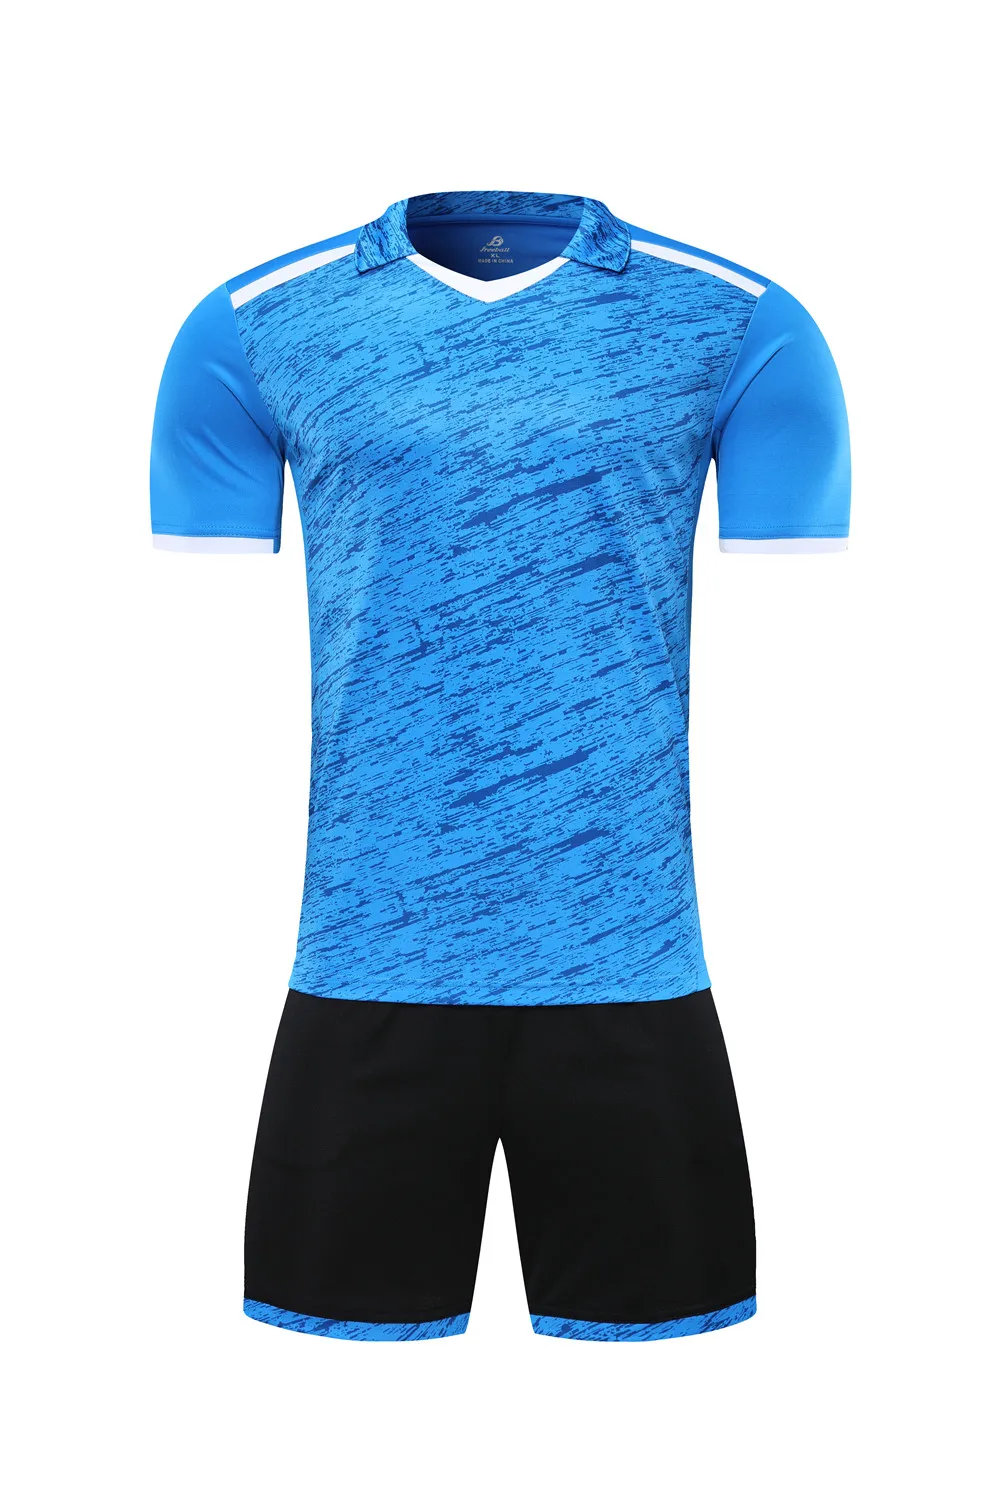 Новые футбольные Survete мужские футболки взрослые Молодежные футбольные майки наборы DIY пользовательские мужские футбольные майки наборы короткий тренировочный спортивный костюм